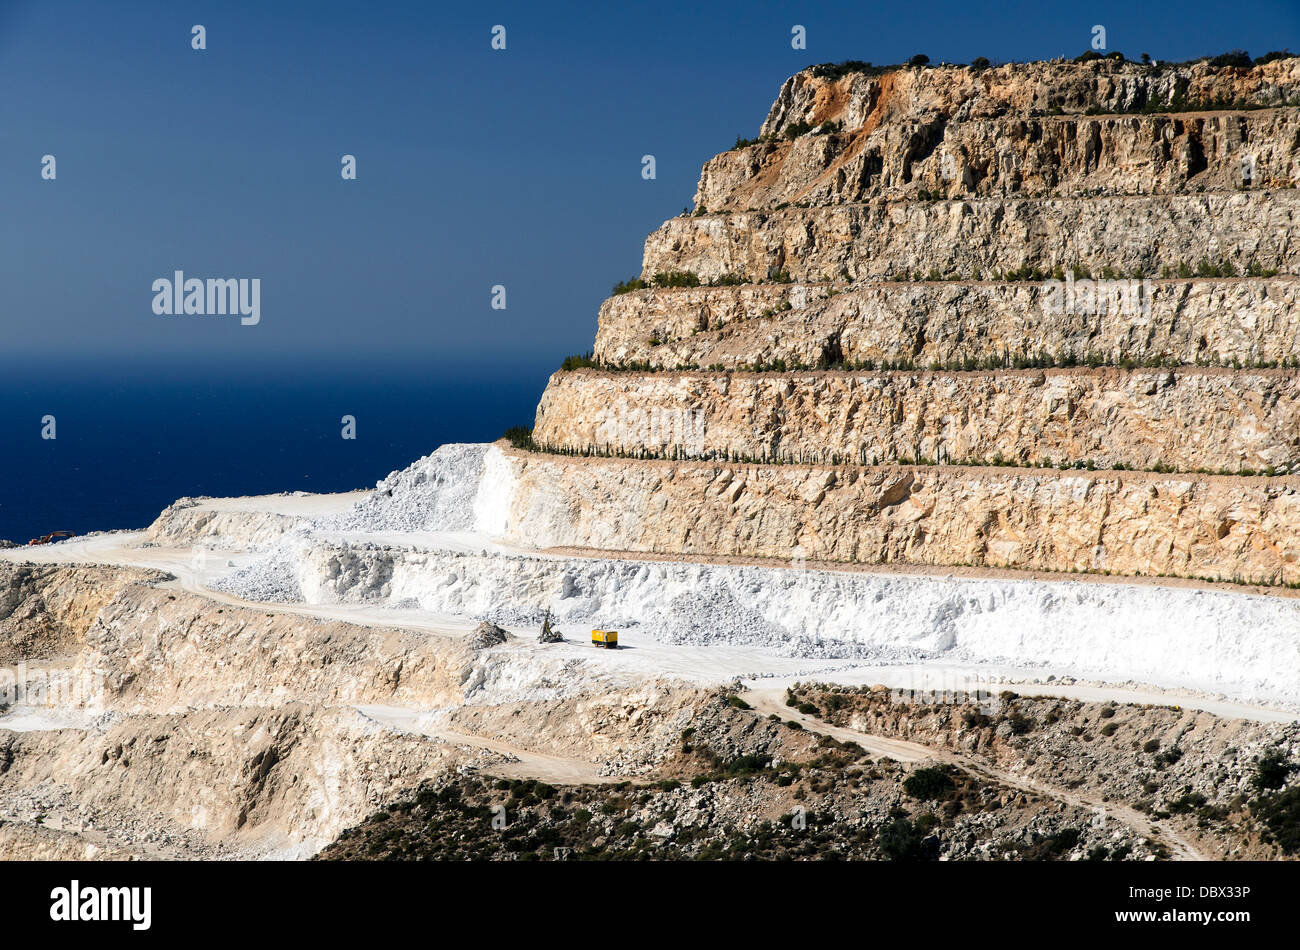 La carrière de marbre le long de la baie de Mirabello - Crète, Grèce Banque D'Images